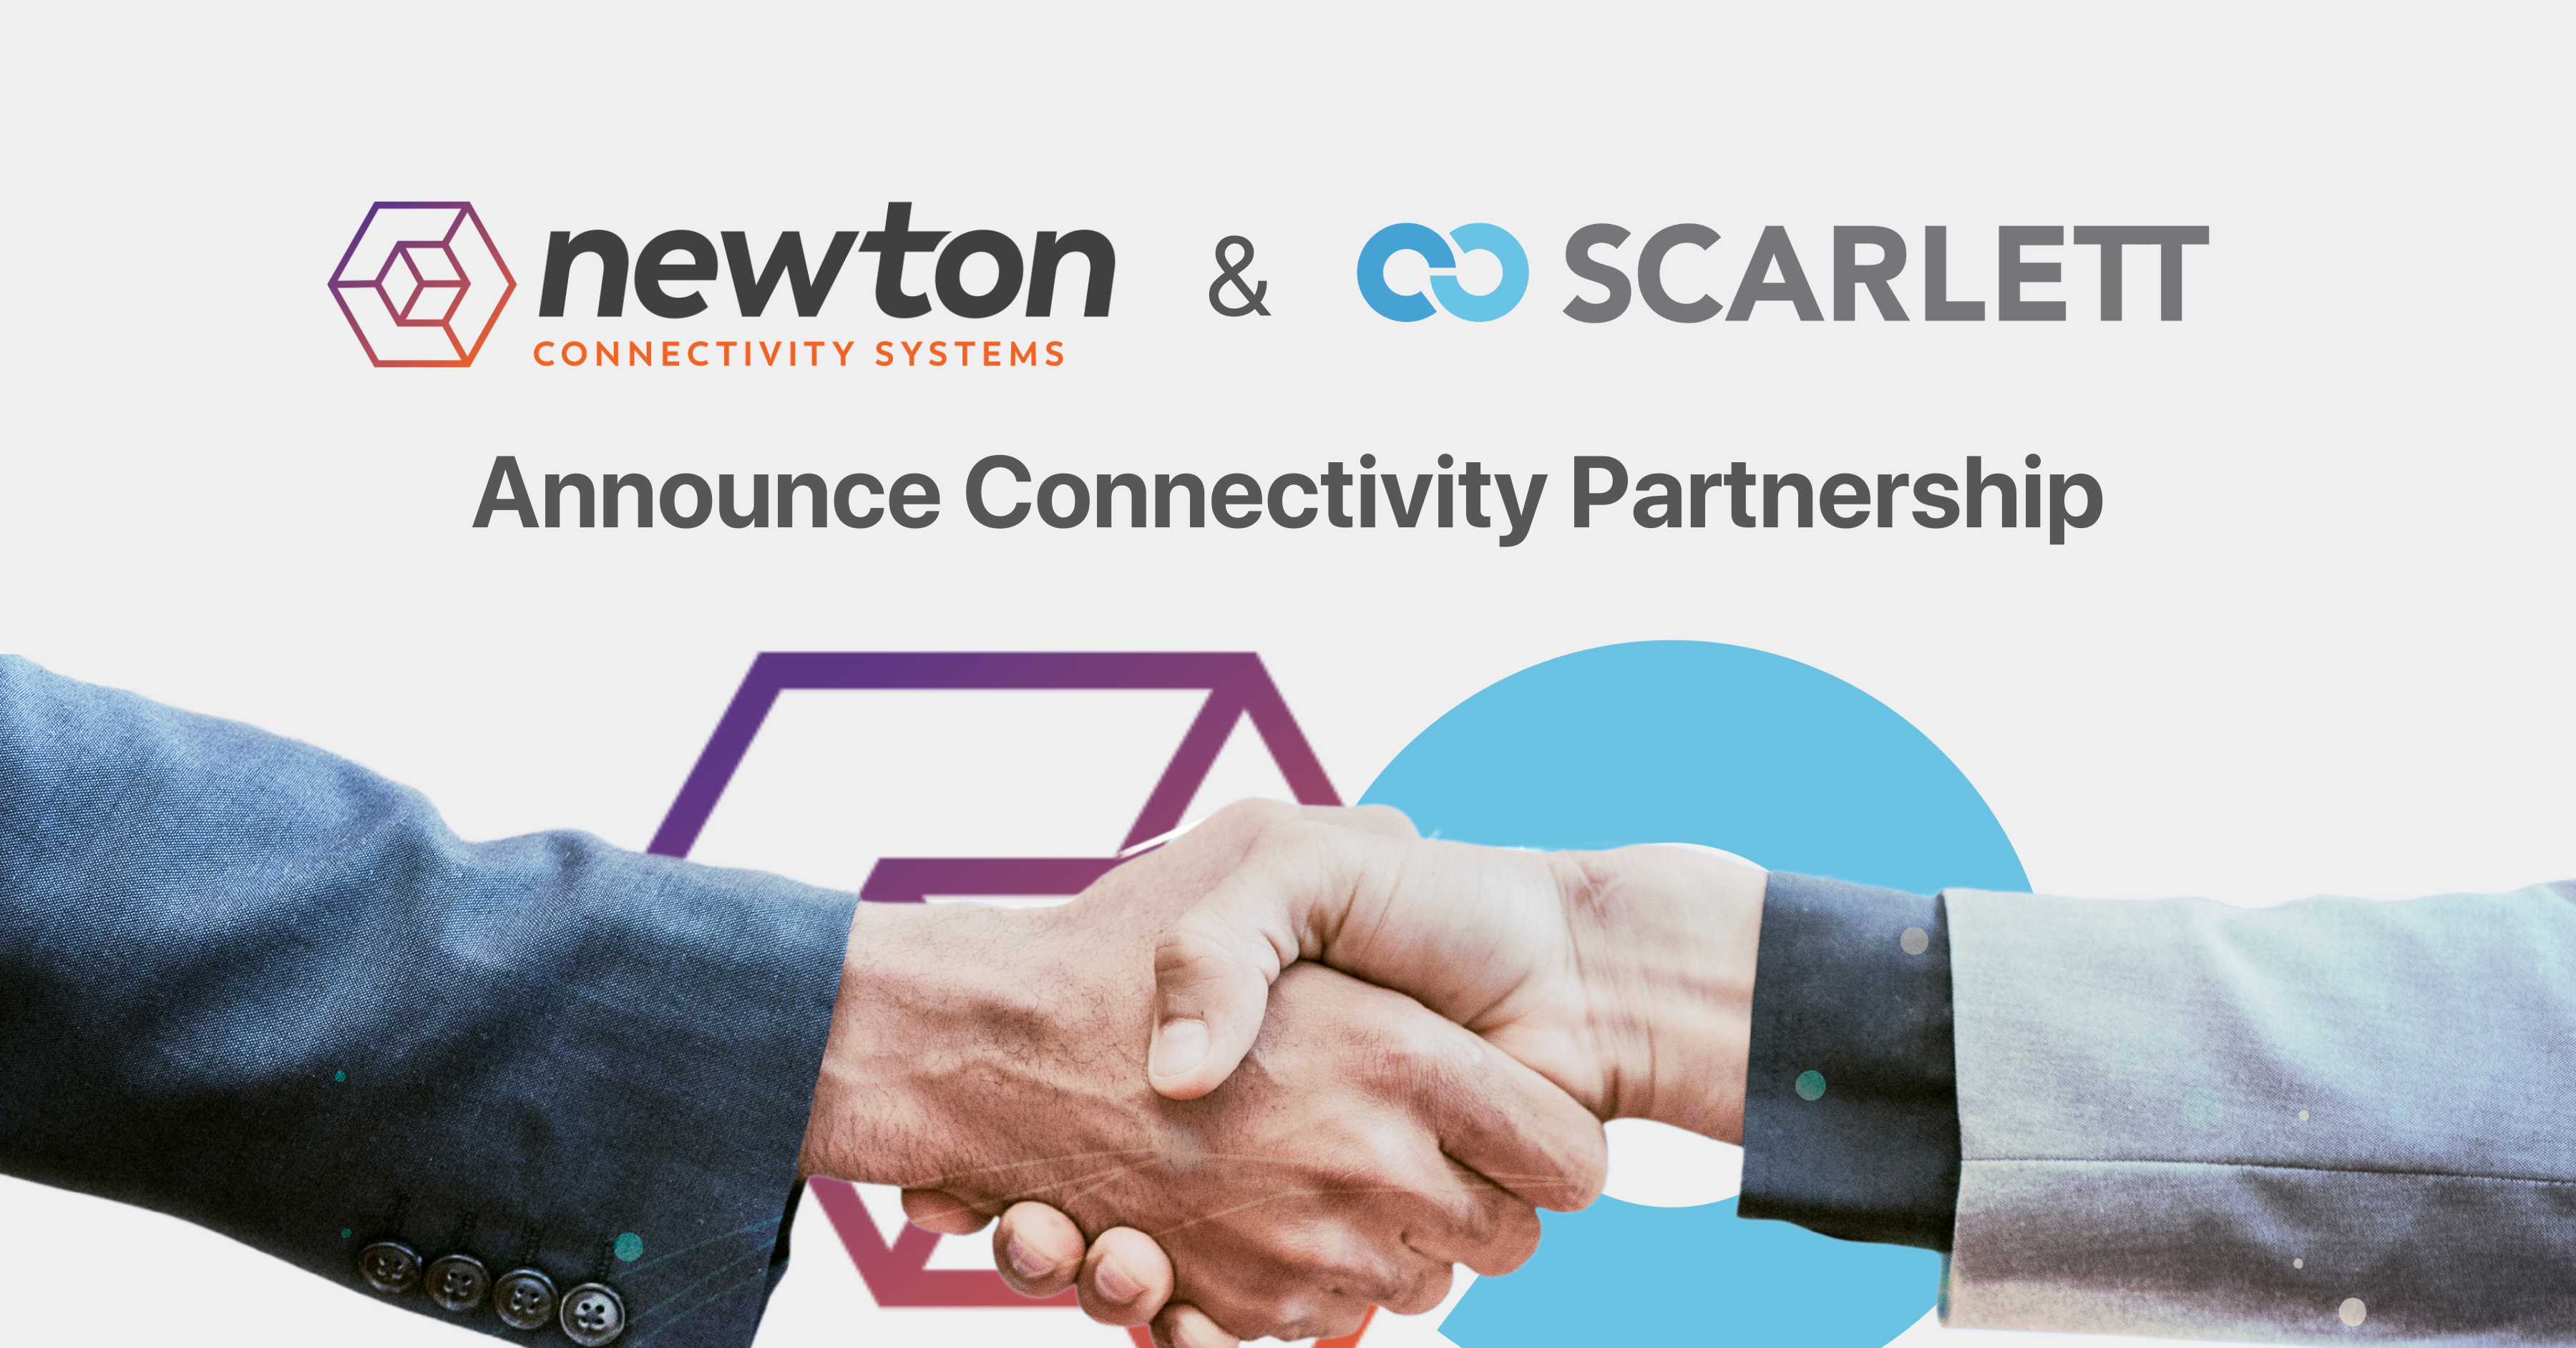 Newton & Axiom Innovations (Scarlett) Announce Connectivity Partnership